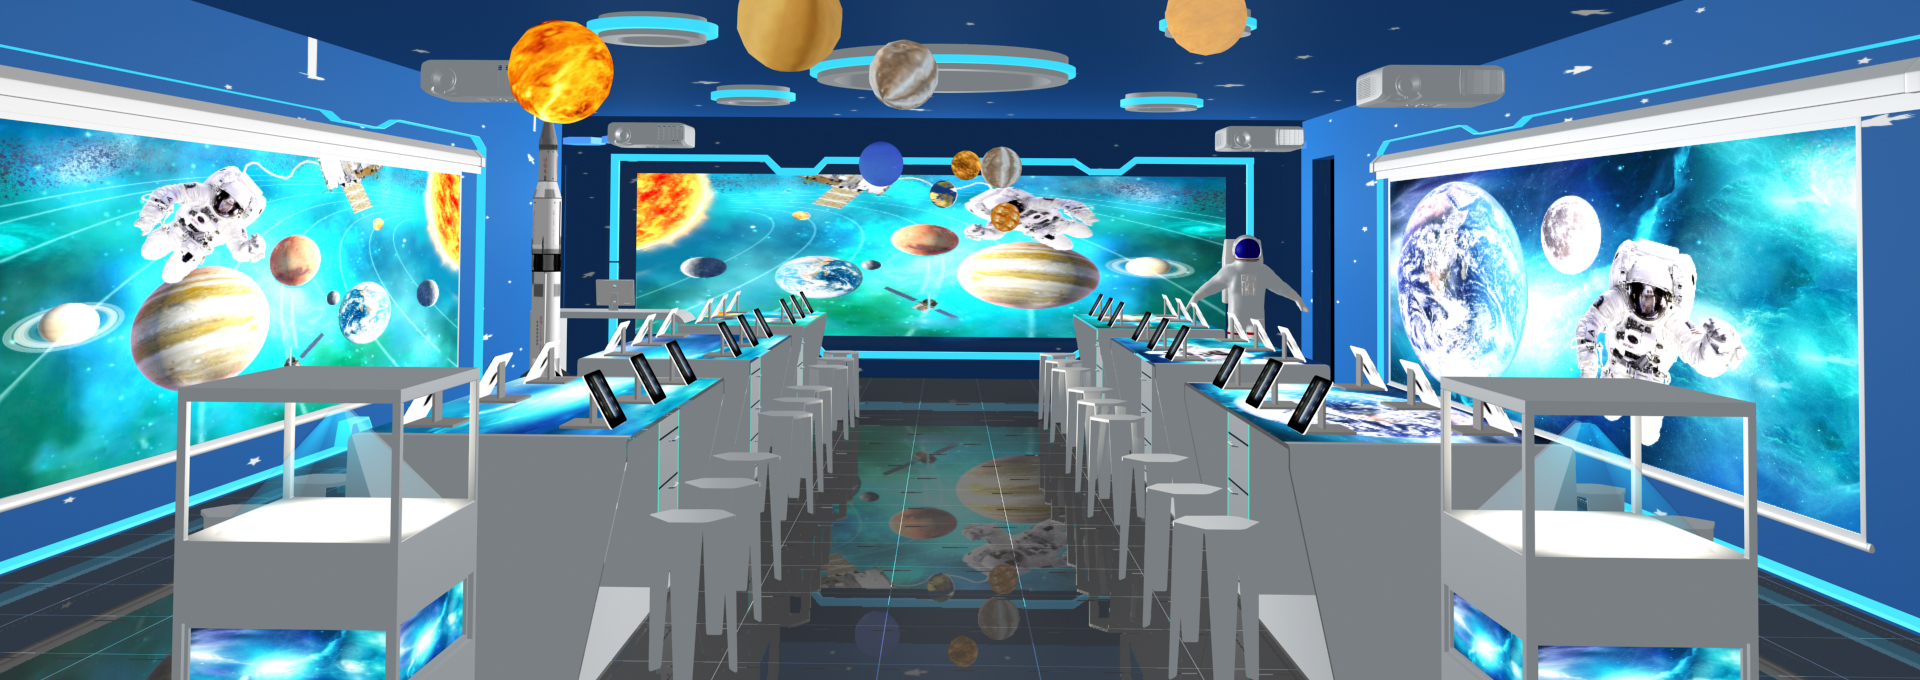 互动航天教室